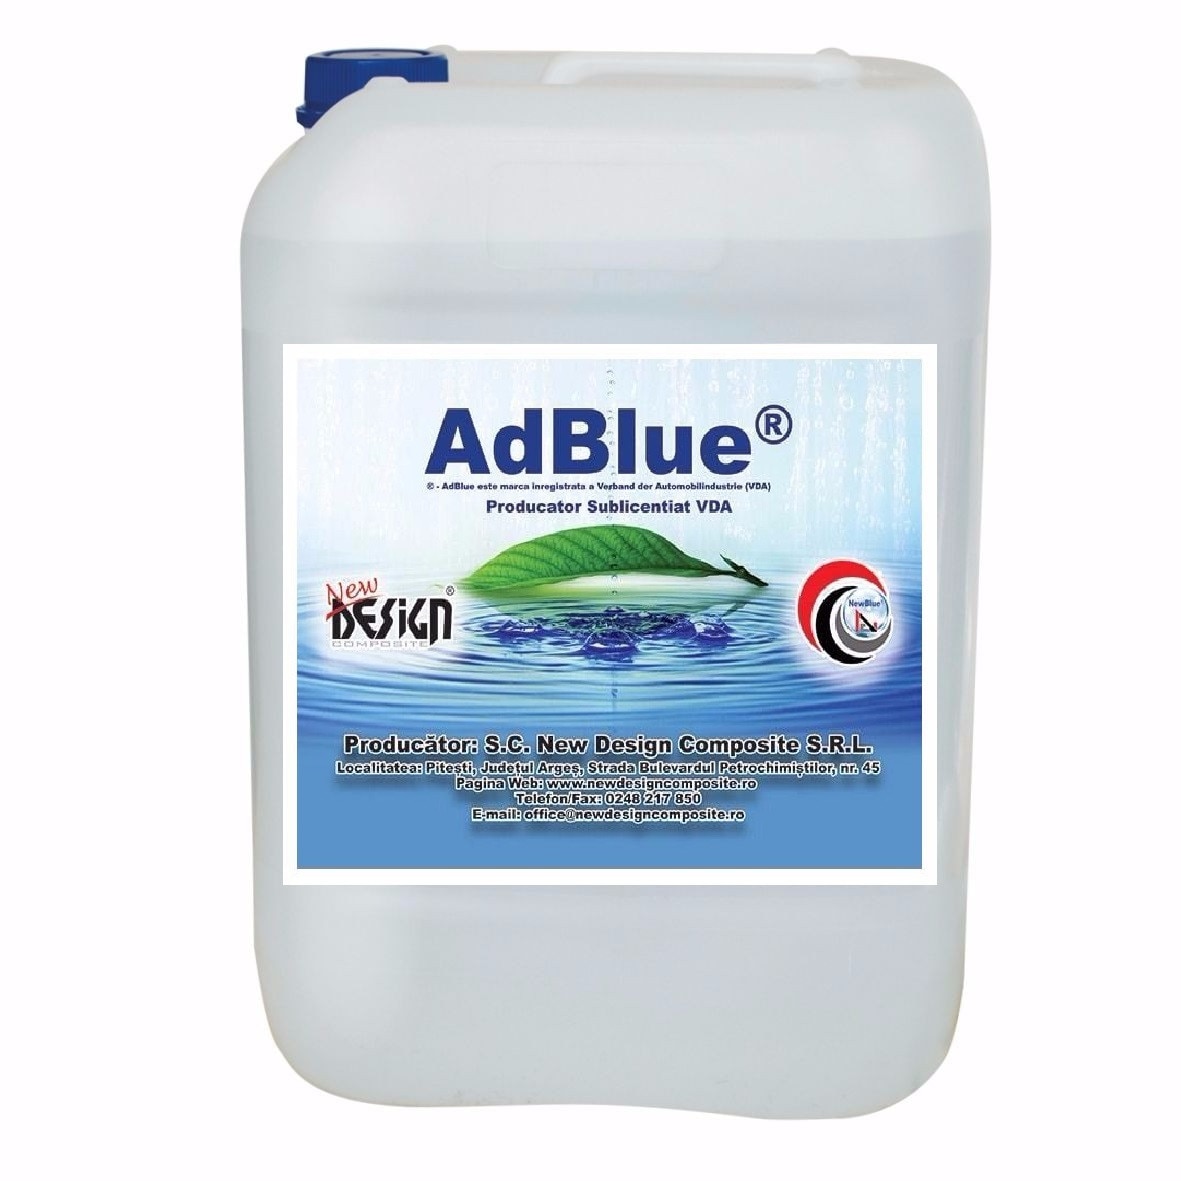 AdBlue 10 L 